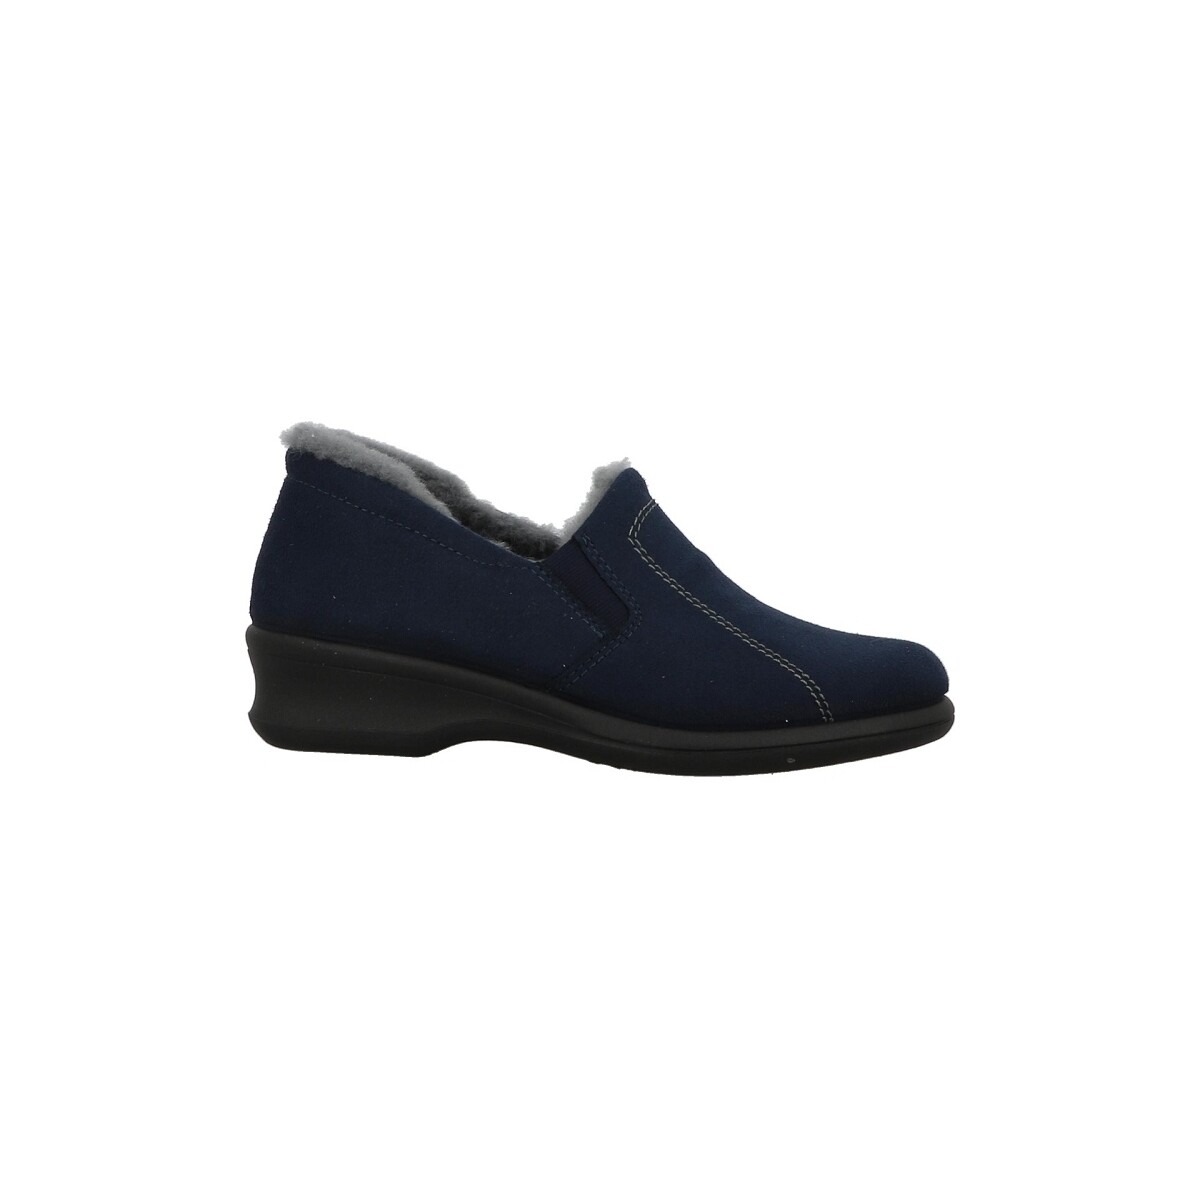 Cipők Női Papucsok Rohde 2516 Kék